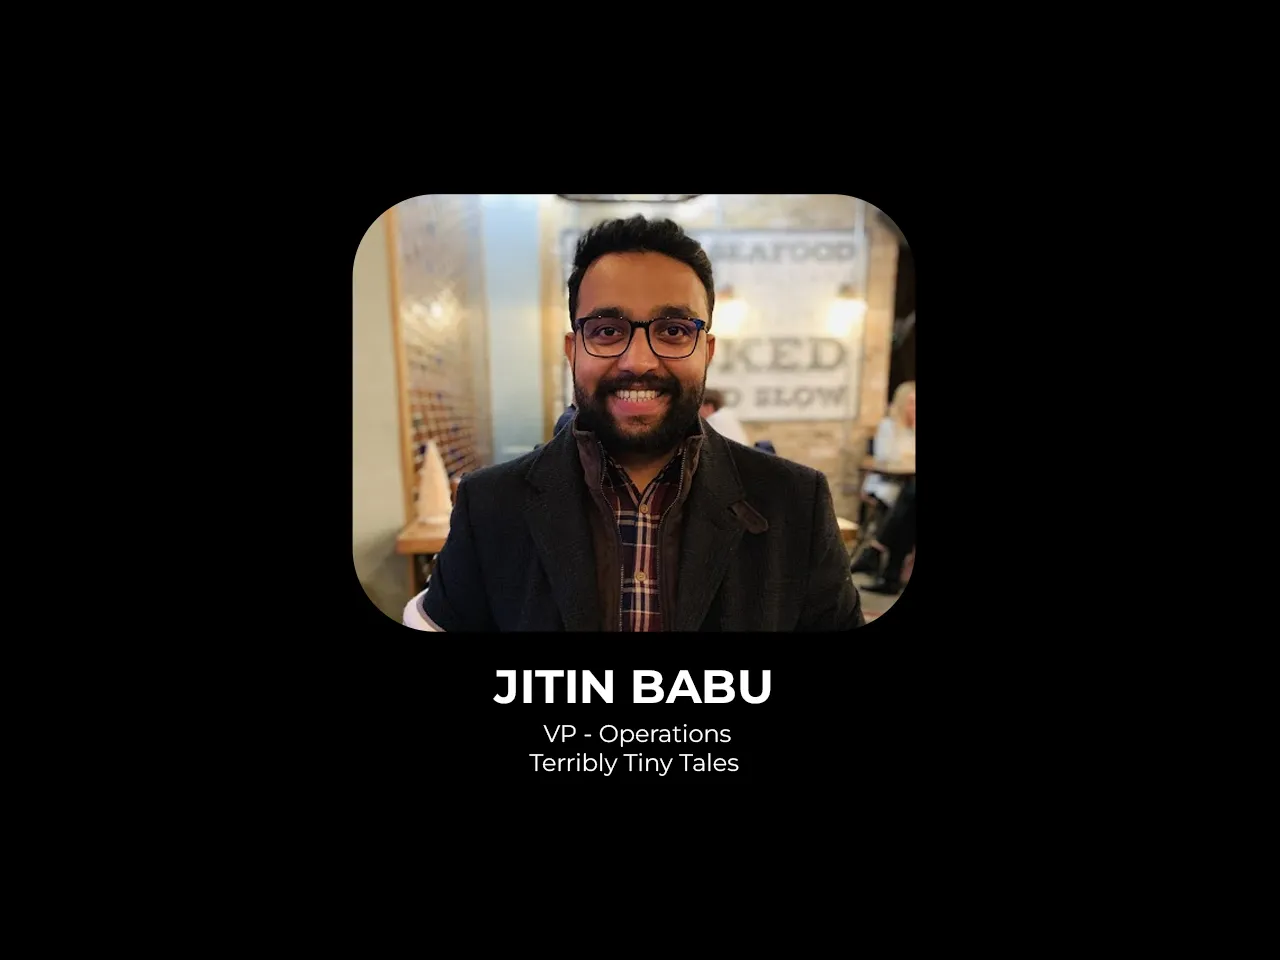 Terribly Tiny Tales appoints Jitin Babu as VP - Operations